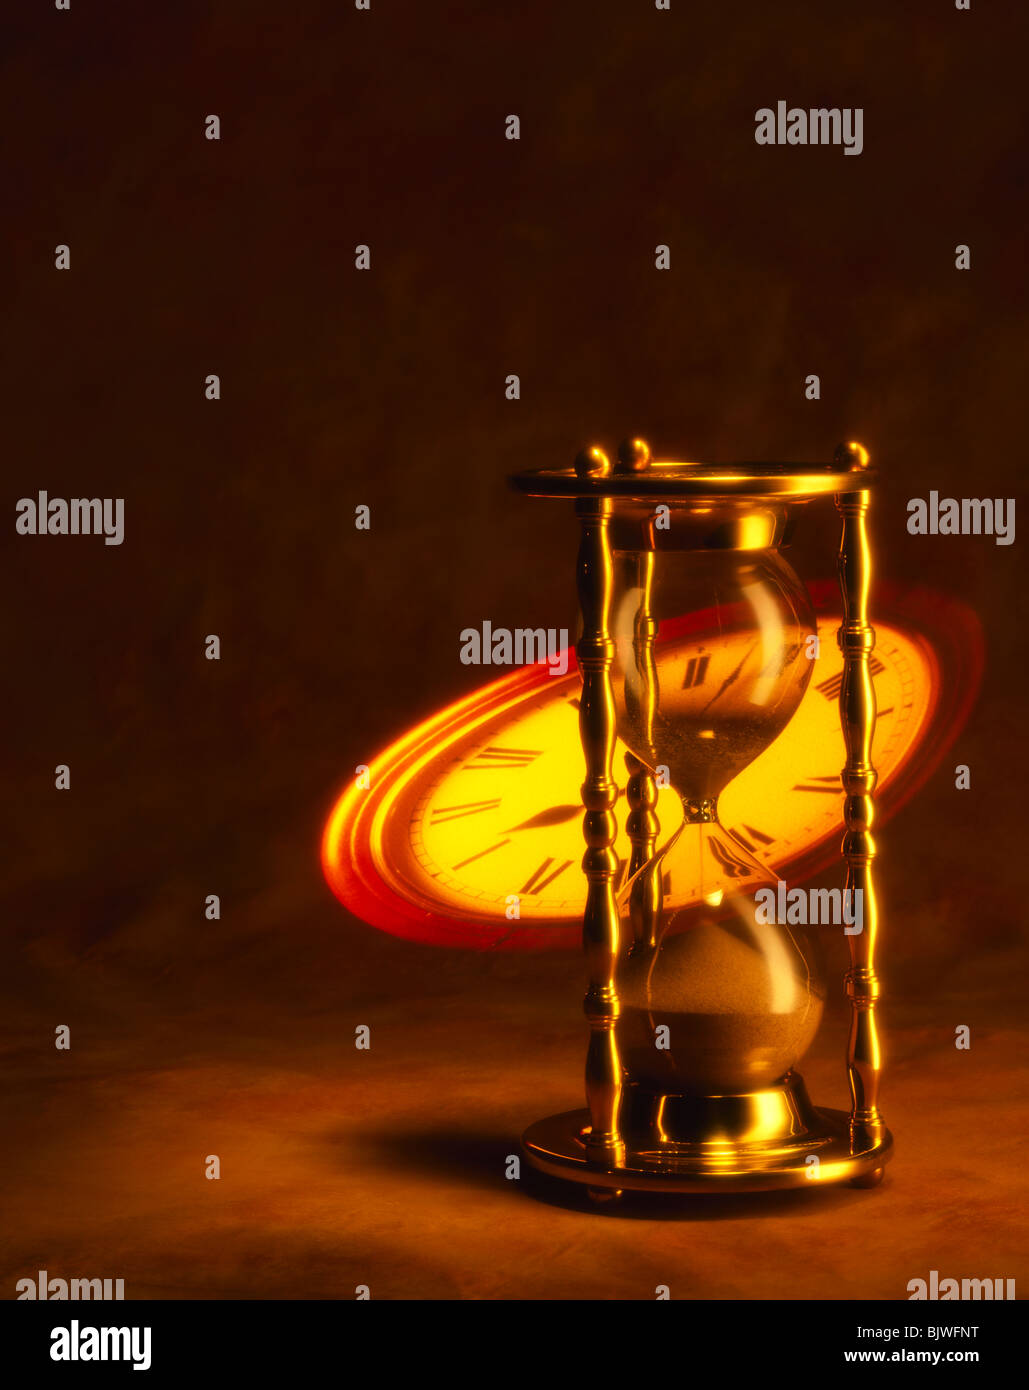 Heure d'horloge avec des projections de verre Banque D'Images